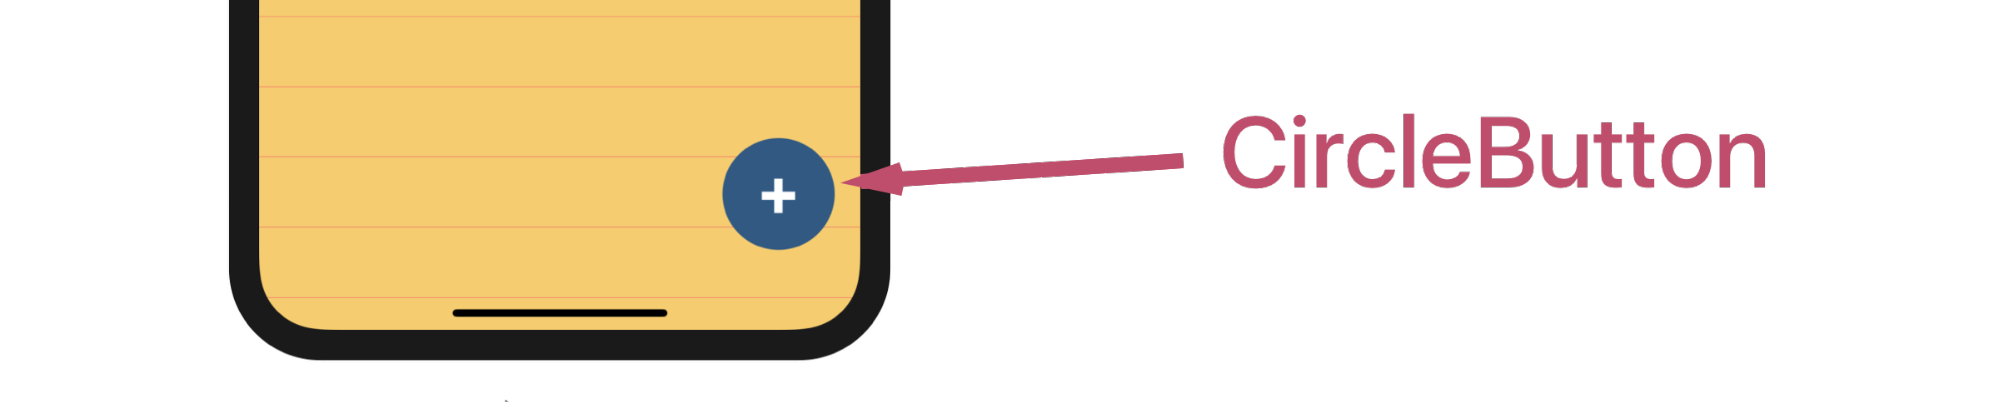 Le rendu de CircleButton : une cercle bleu en bas à droite de l’écran avec un +